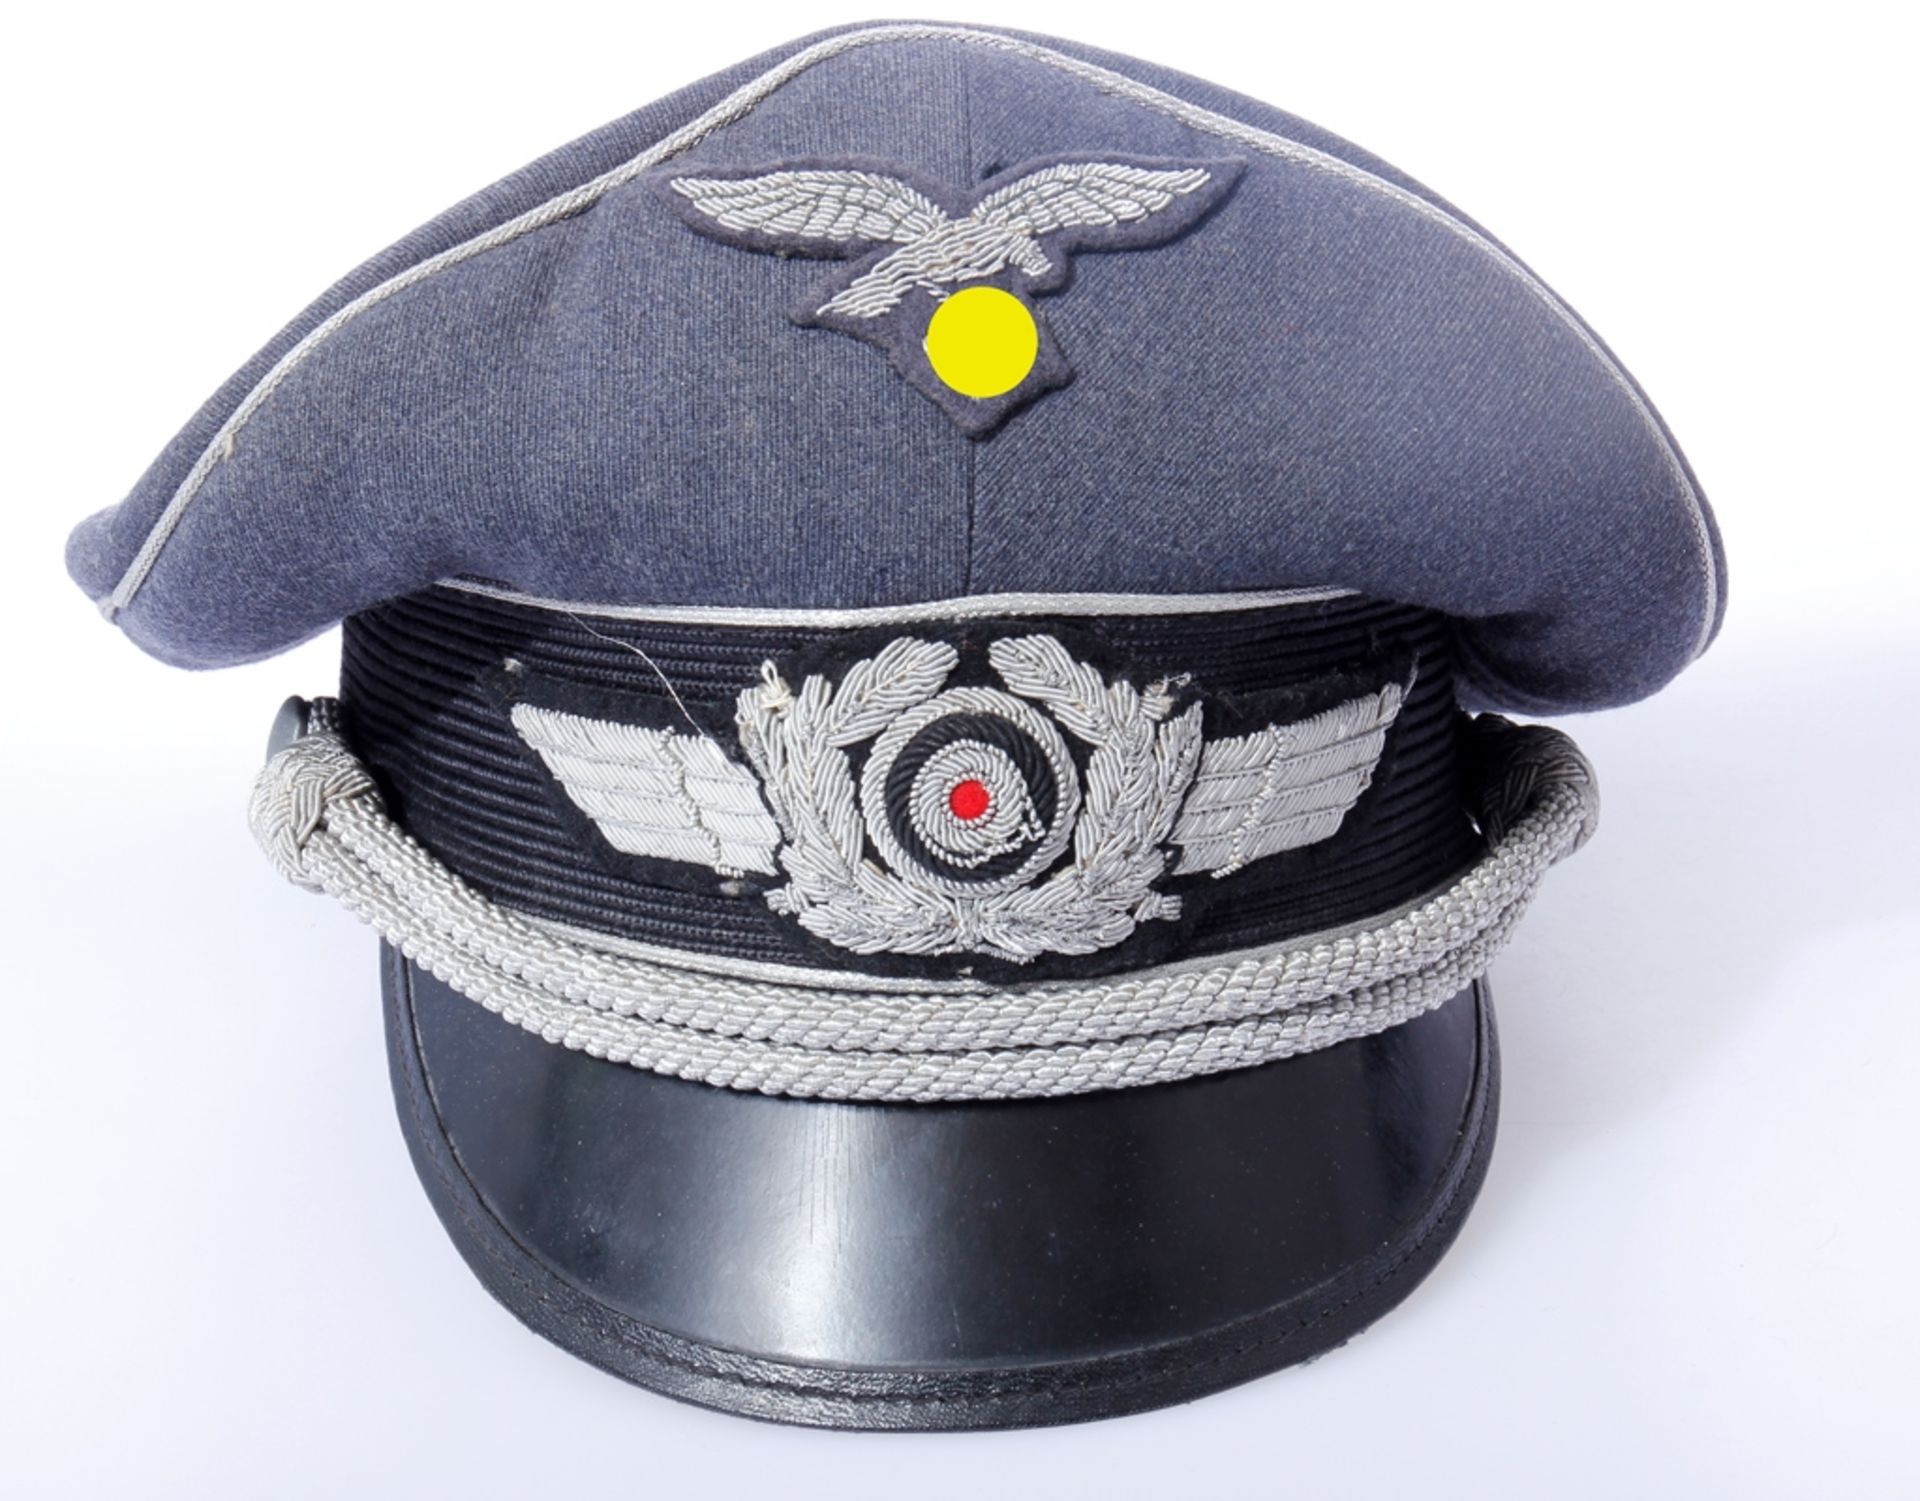 Luftwaffe Schirmmütze für Offiziere mit Adler, Schwinge und Sturmriemen, Verkaufsabteilung der